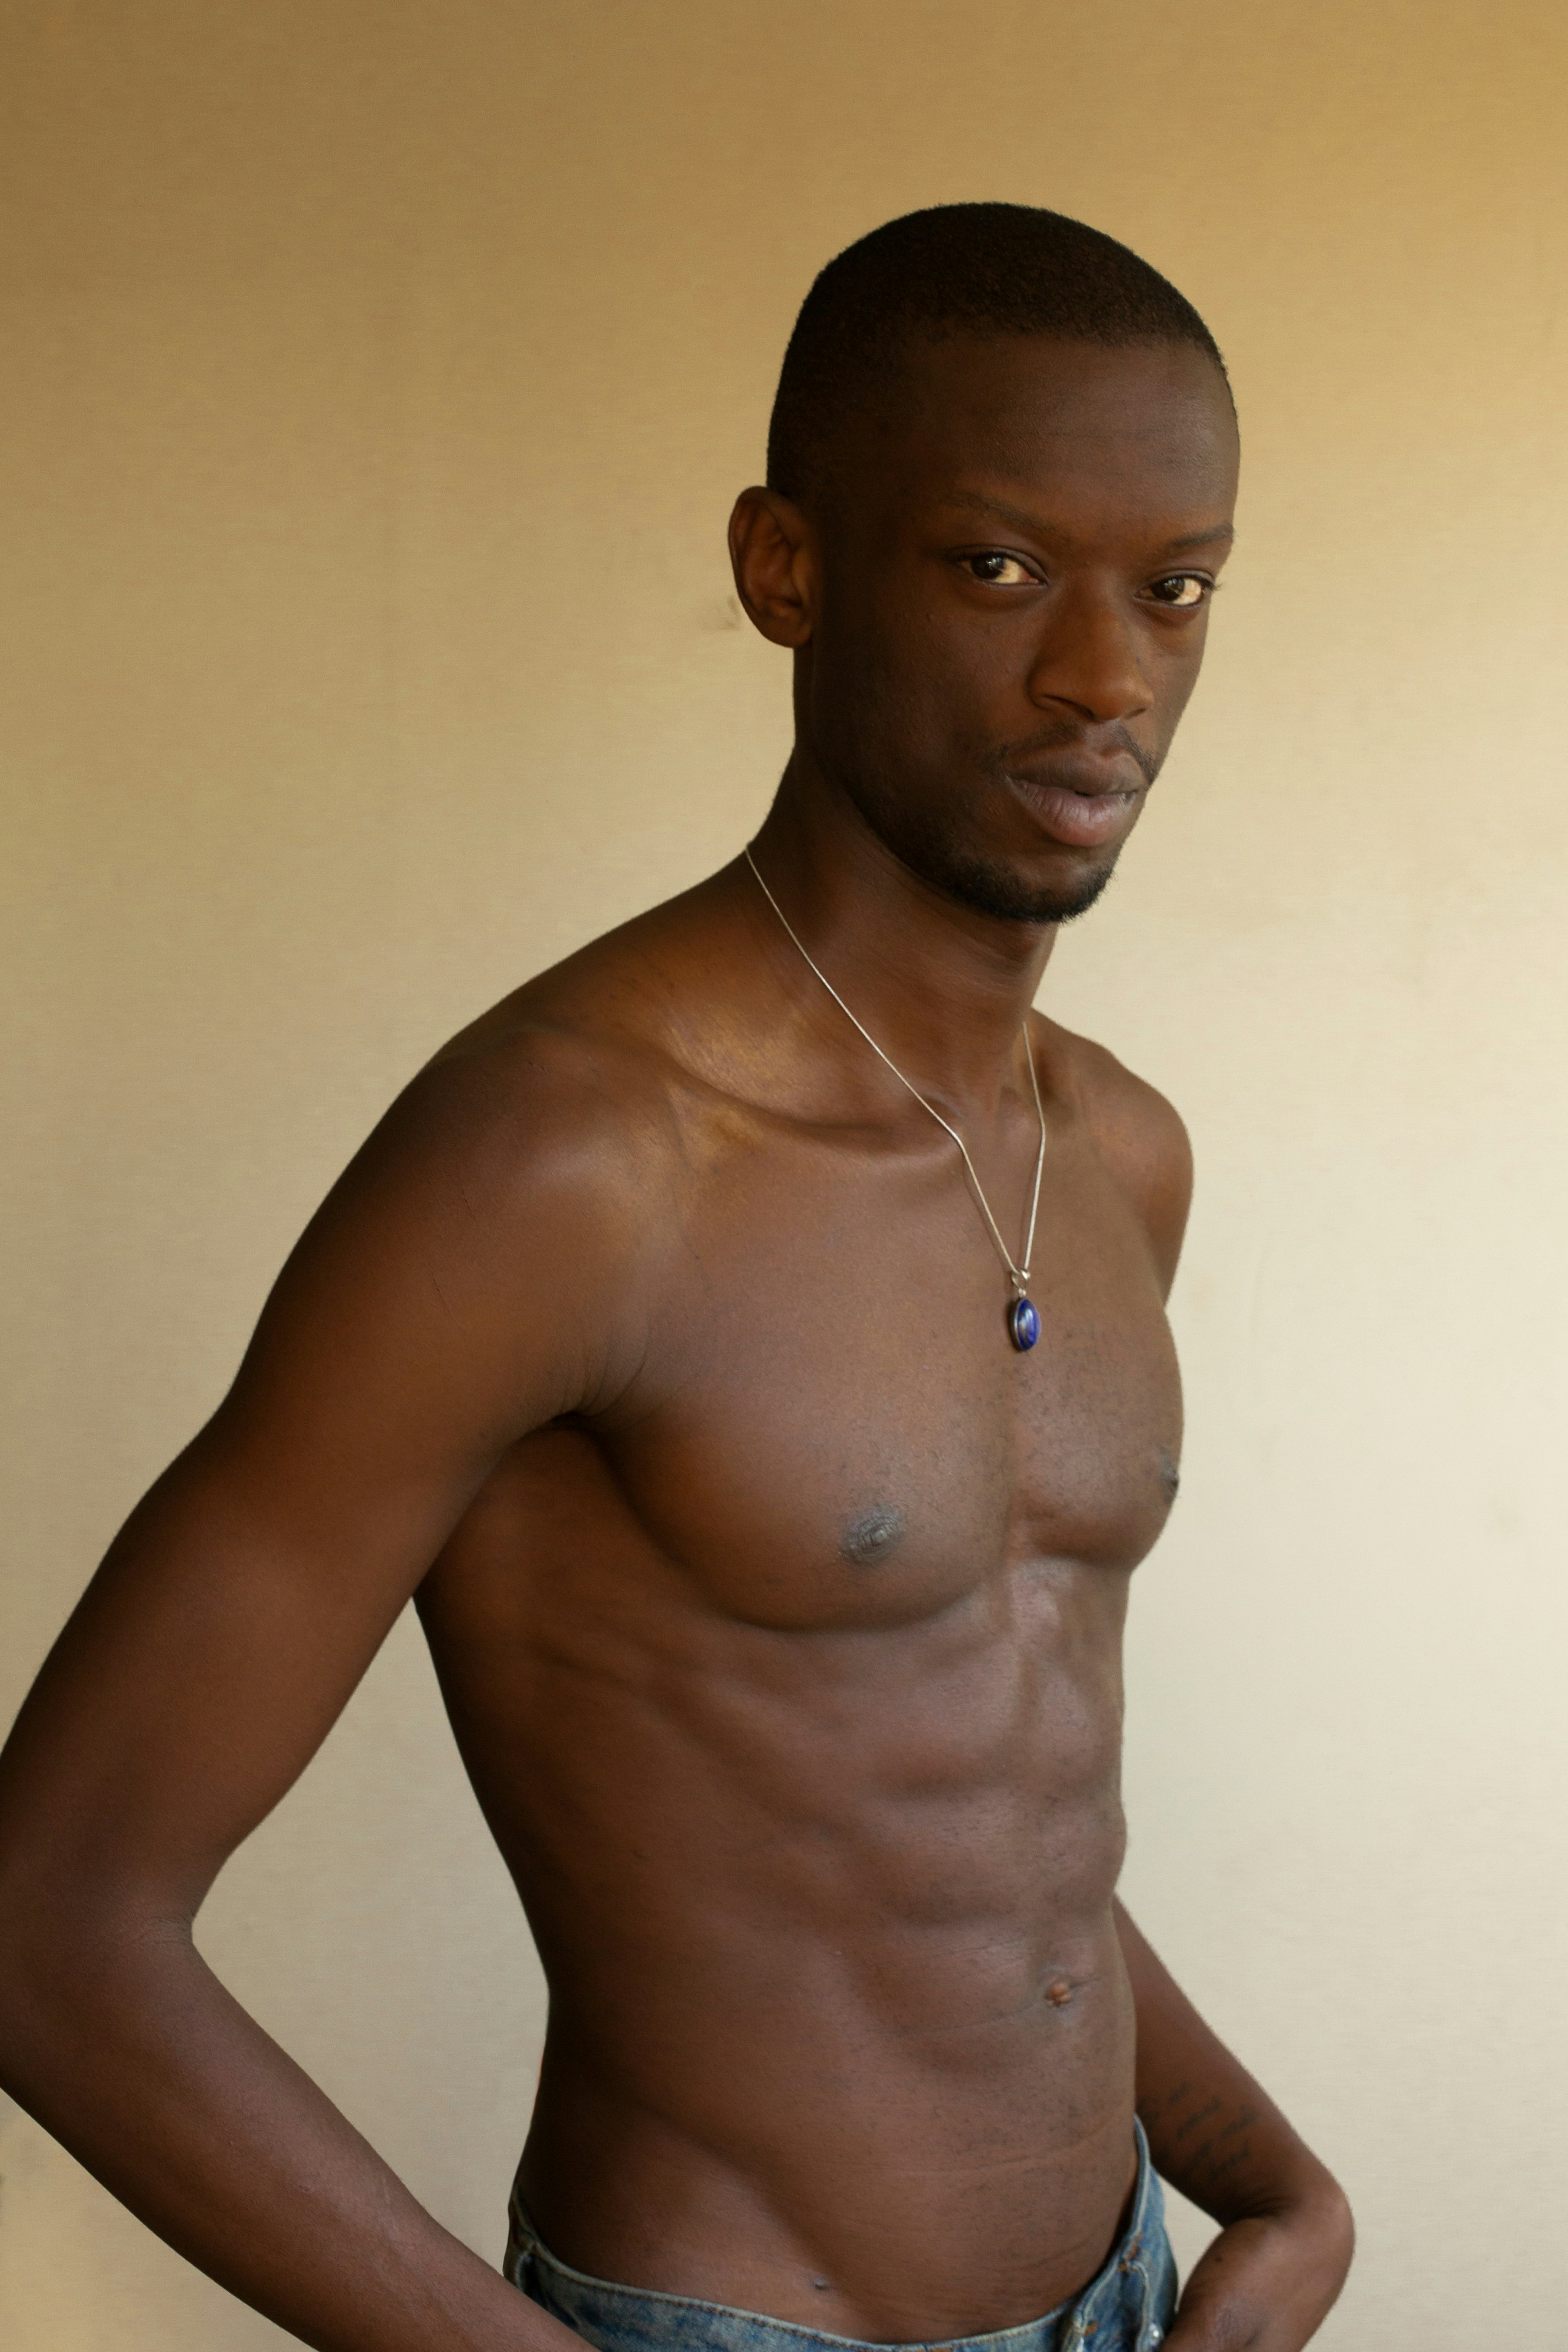 An image of Benjamin Asabere